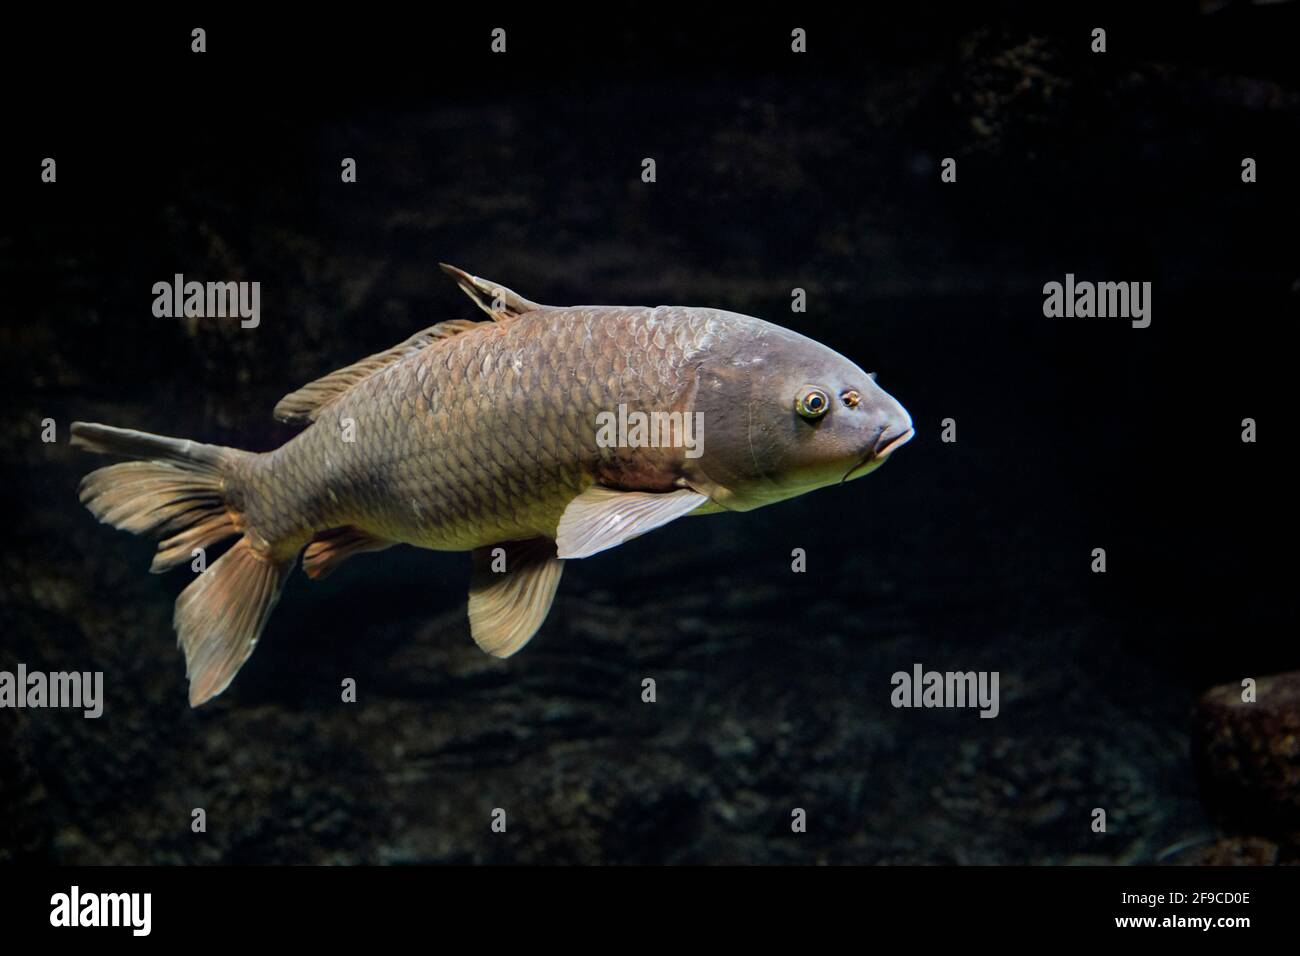 Common carp (Cyprinus carpio) swims in aquarium. Stock Photo